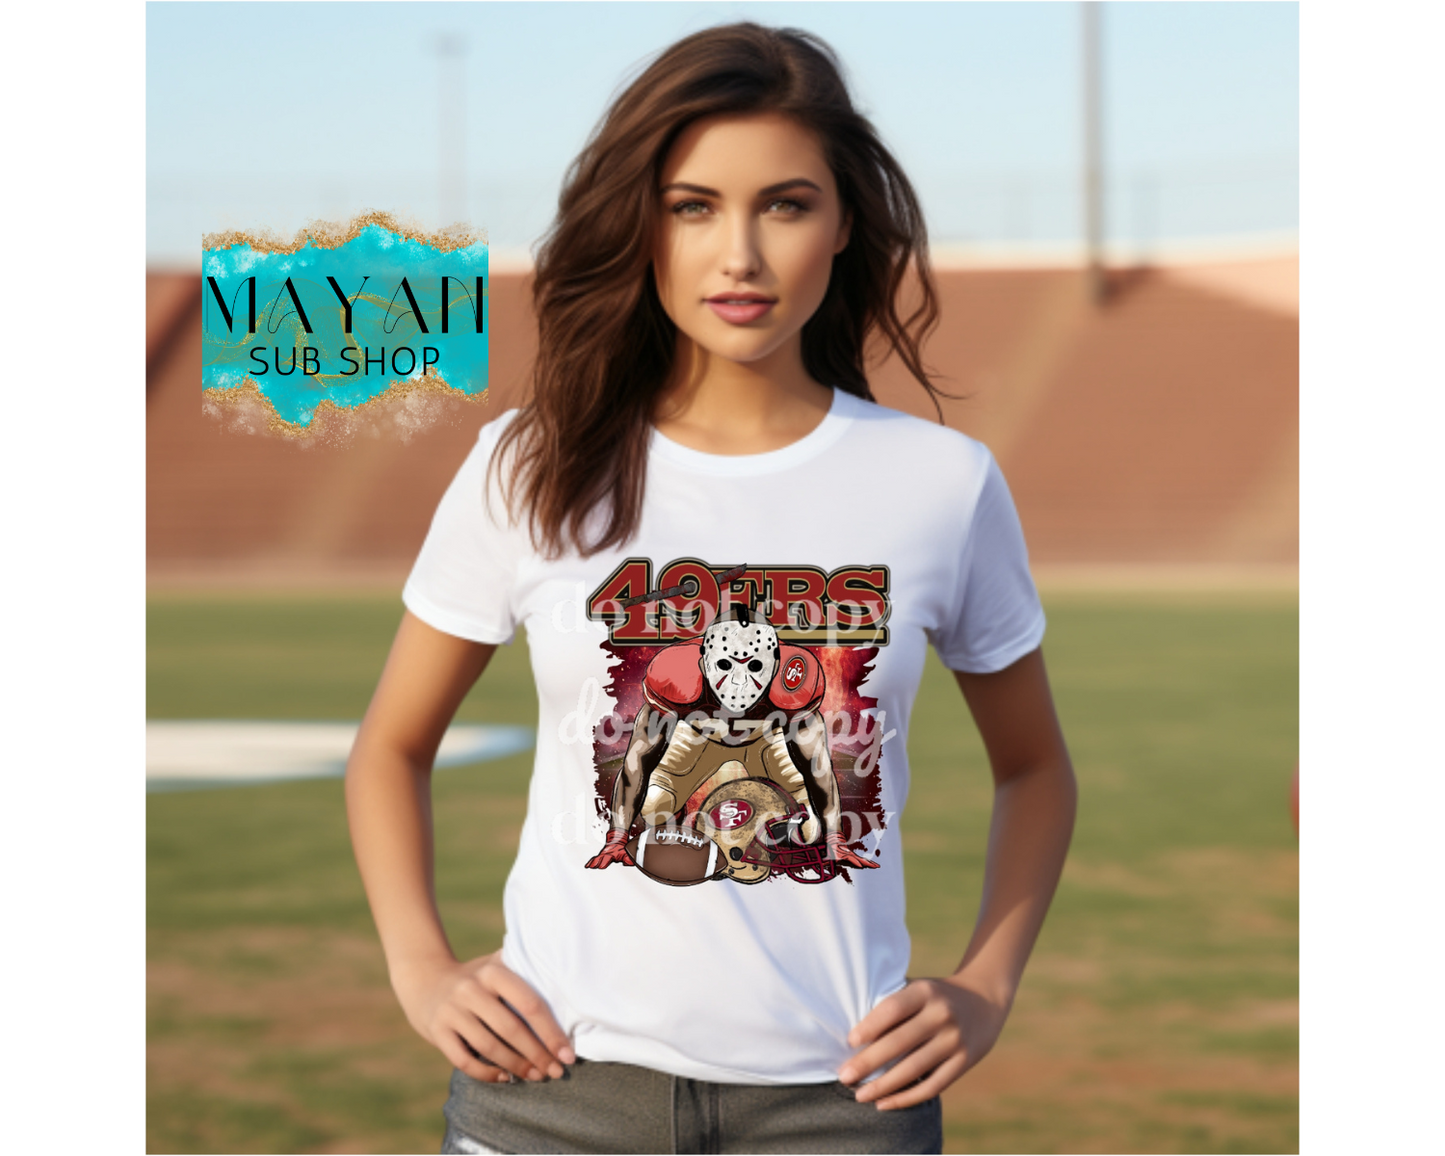 Football Jason shirt. -Mayan Sub Shop